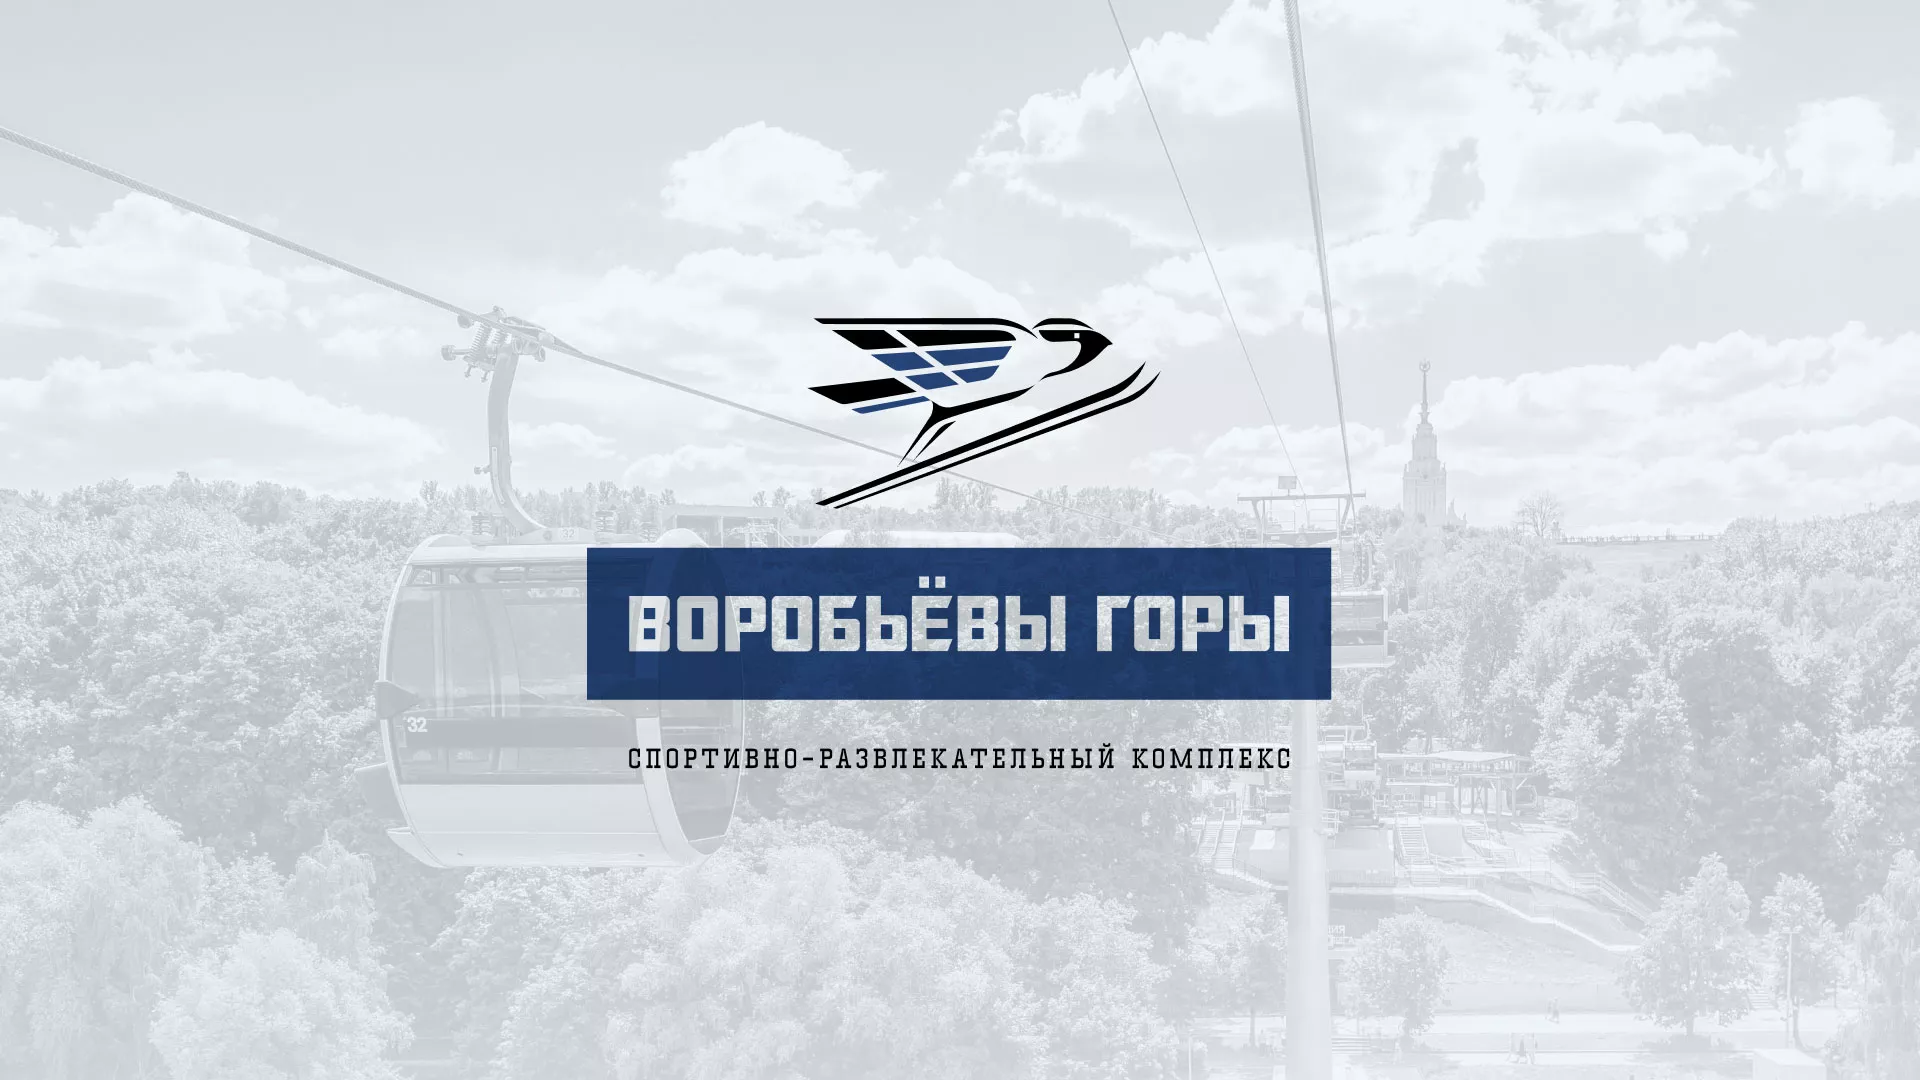 Разработка сайта в Новоалександровске для спортивно-развлекательного комплекса «Воробьёвы горы»